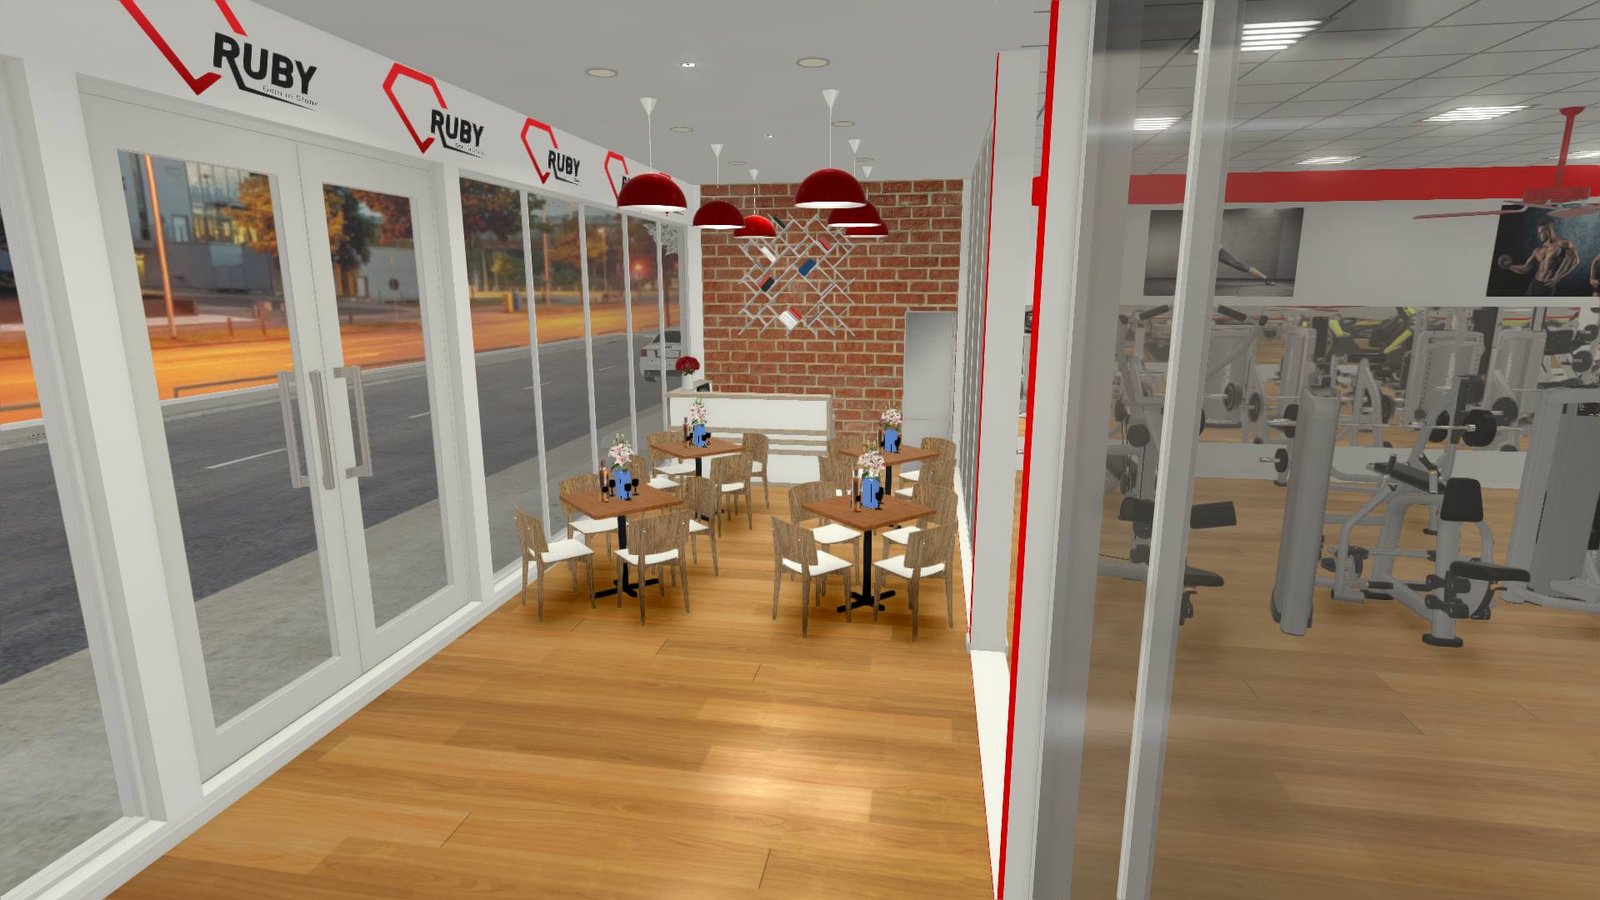 Hình ảnh 3D đồ họa vi tính cho phòng tập gym